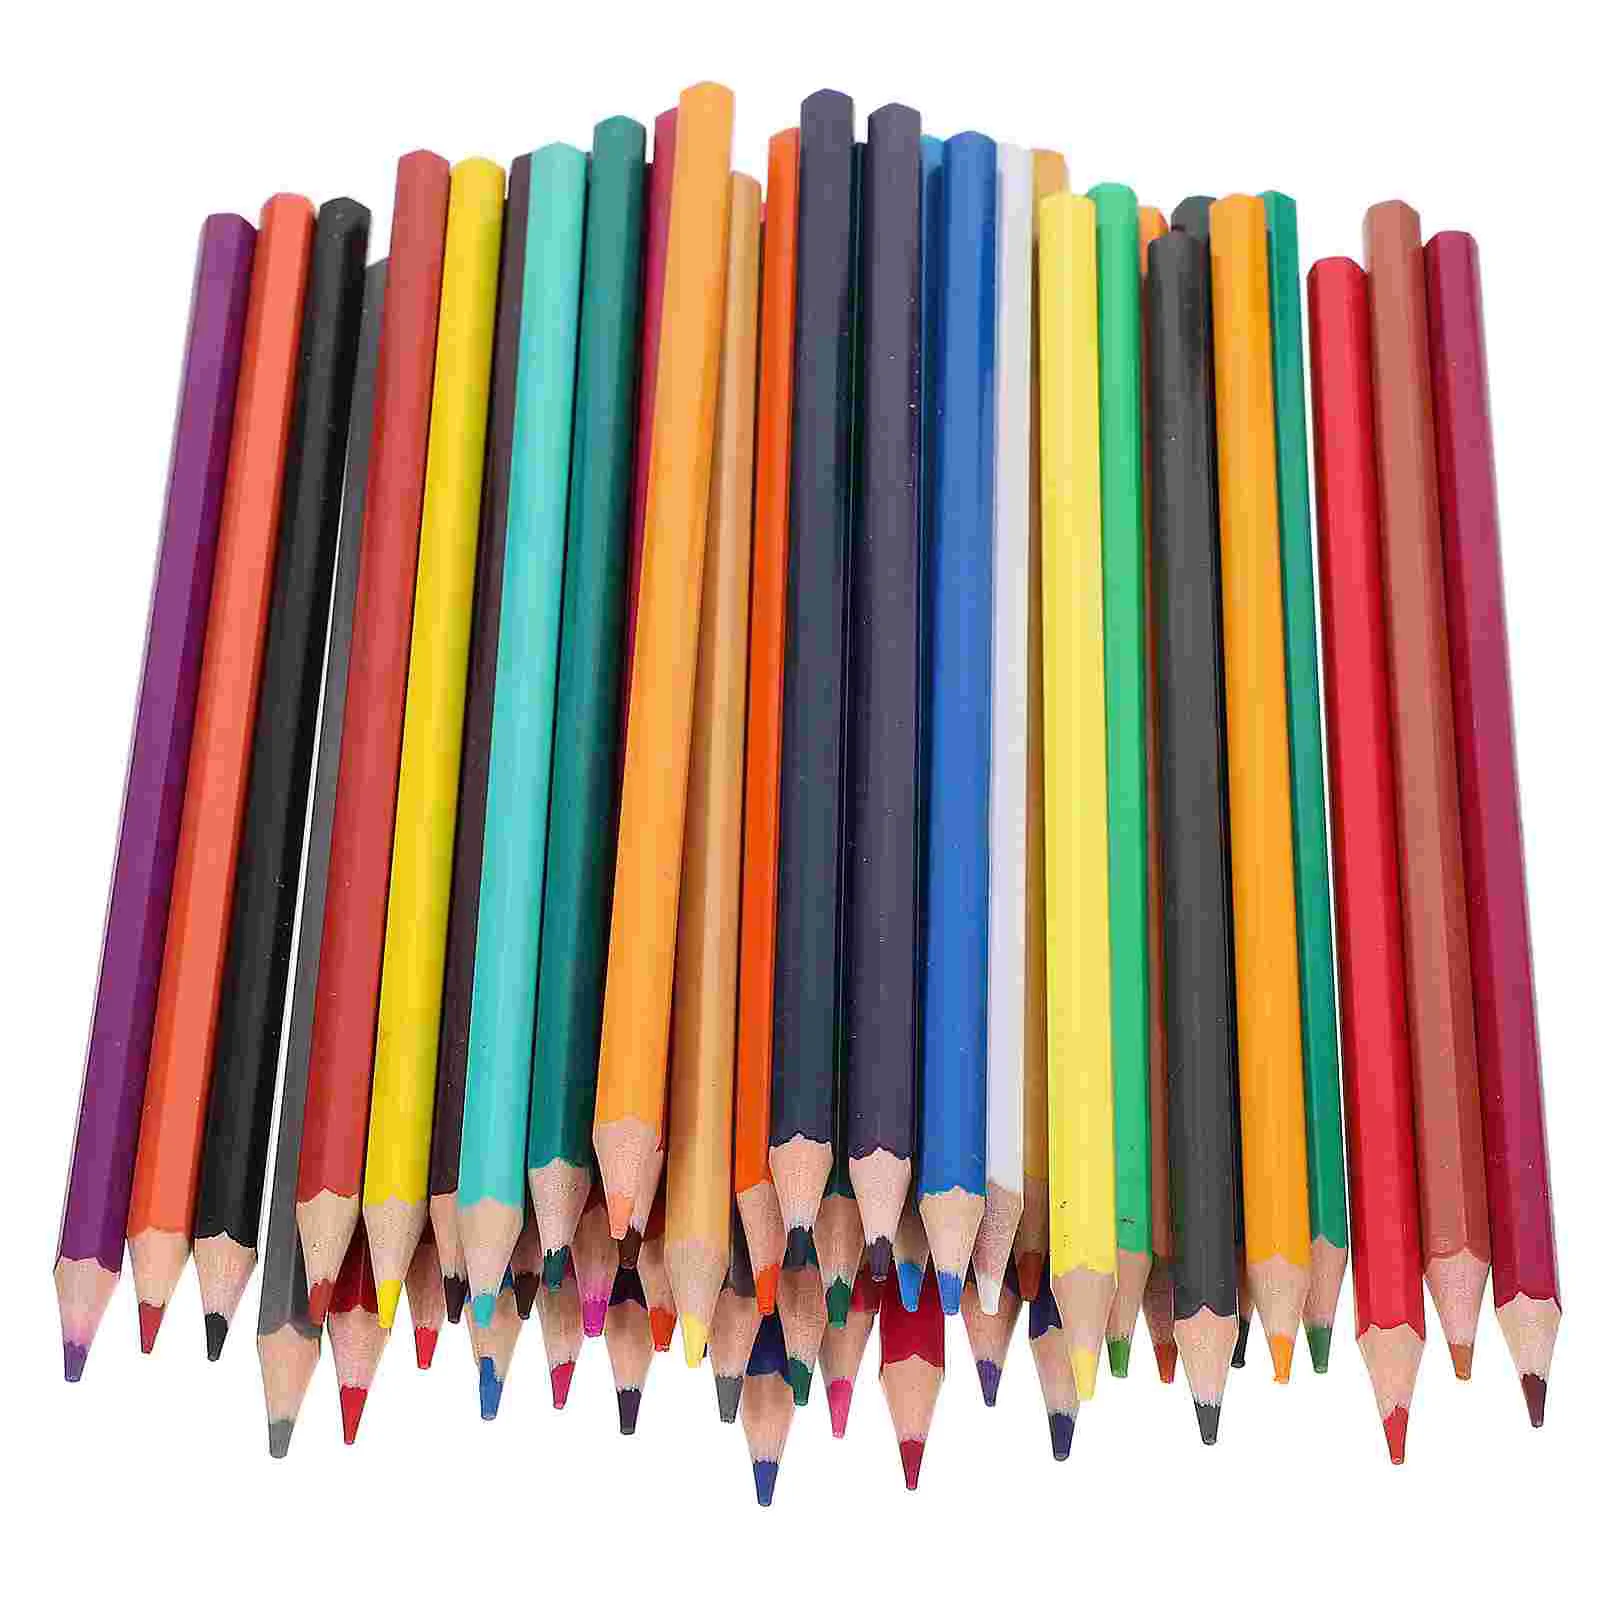 

48pcs Adorable Paint Pencils Bulk Student Themed Students Pencils Painting Colored Pencils Set